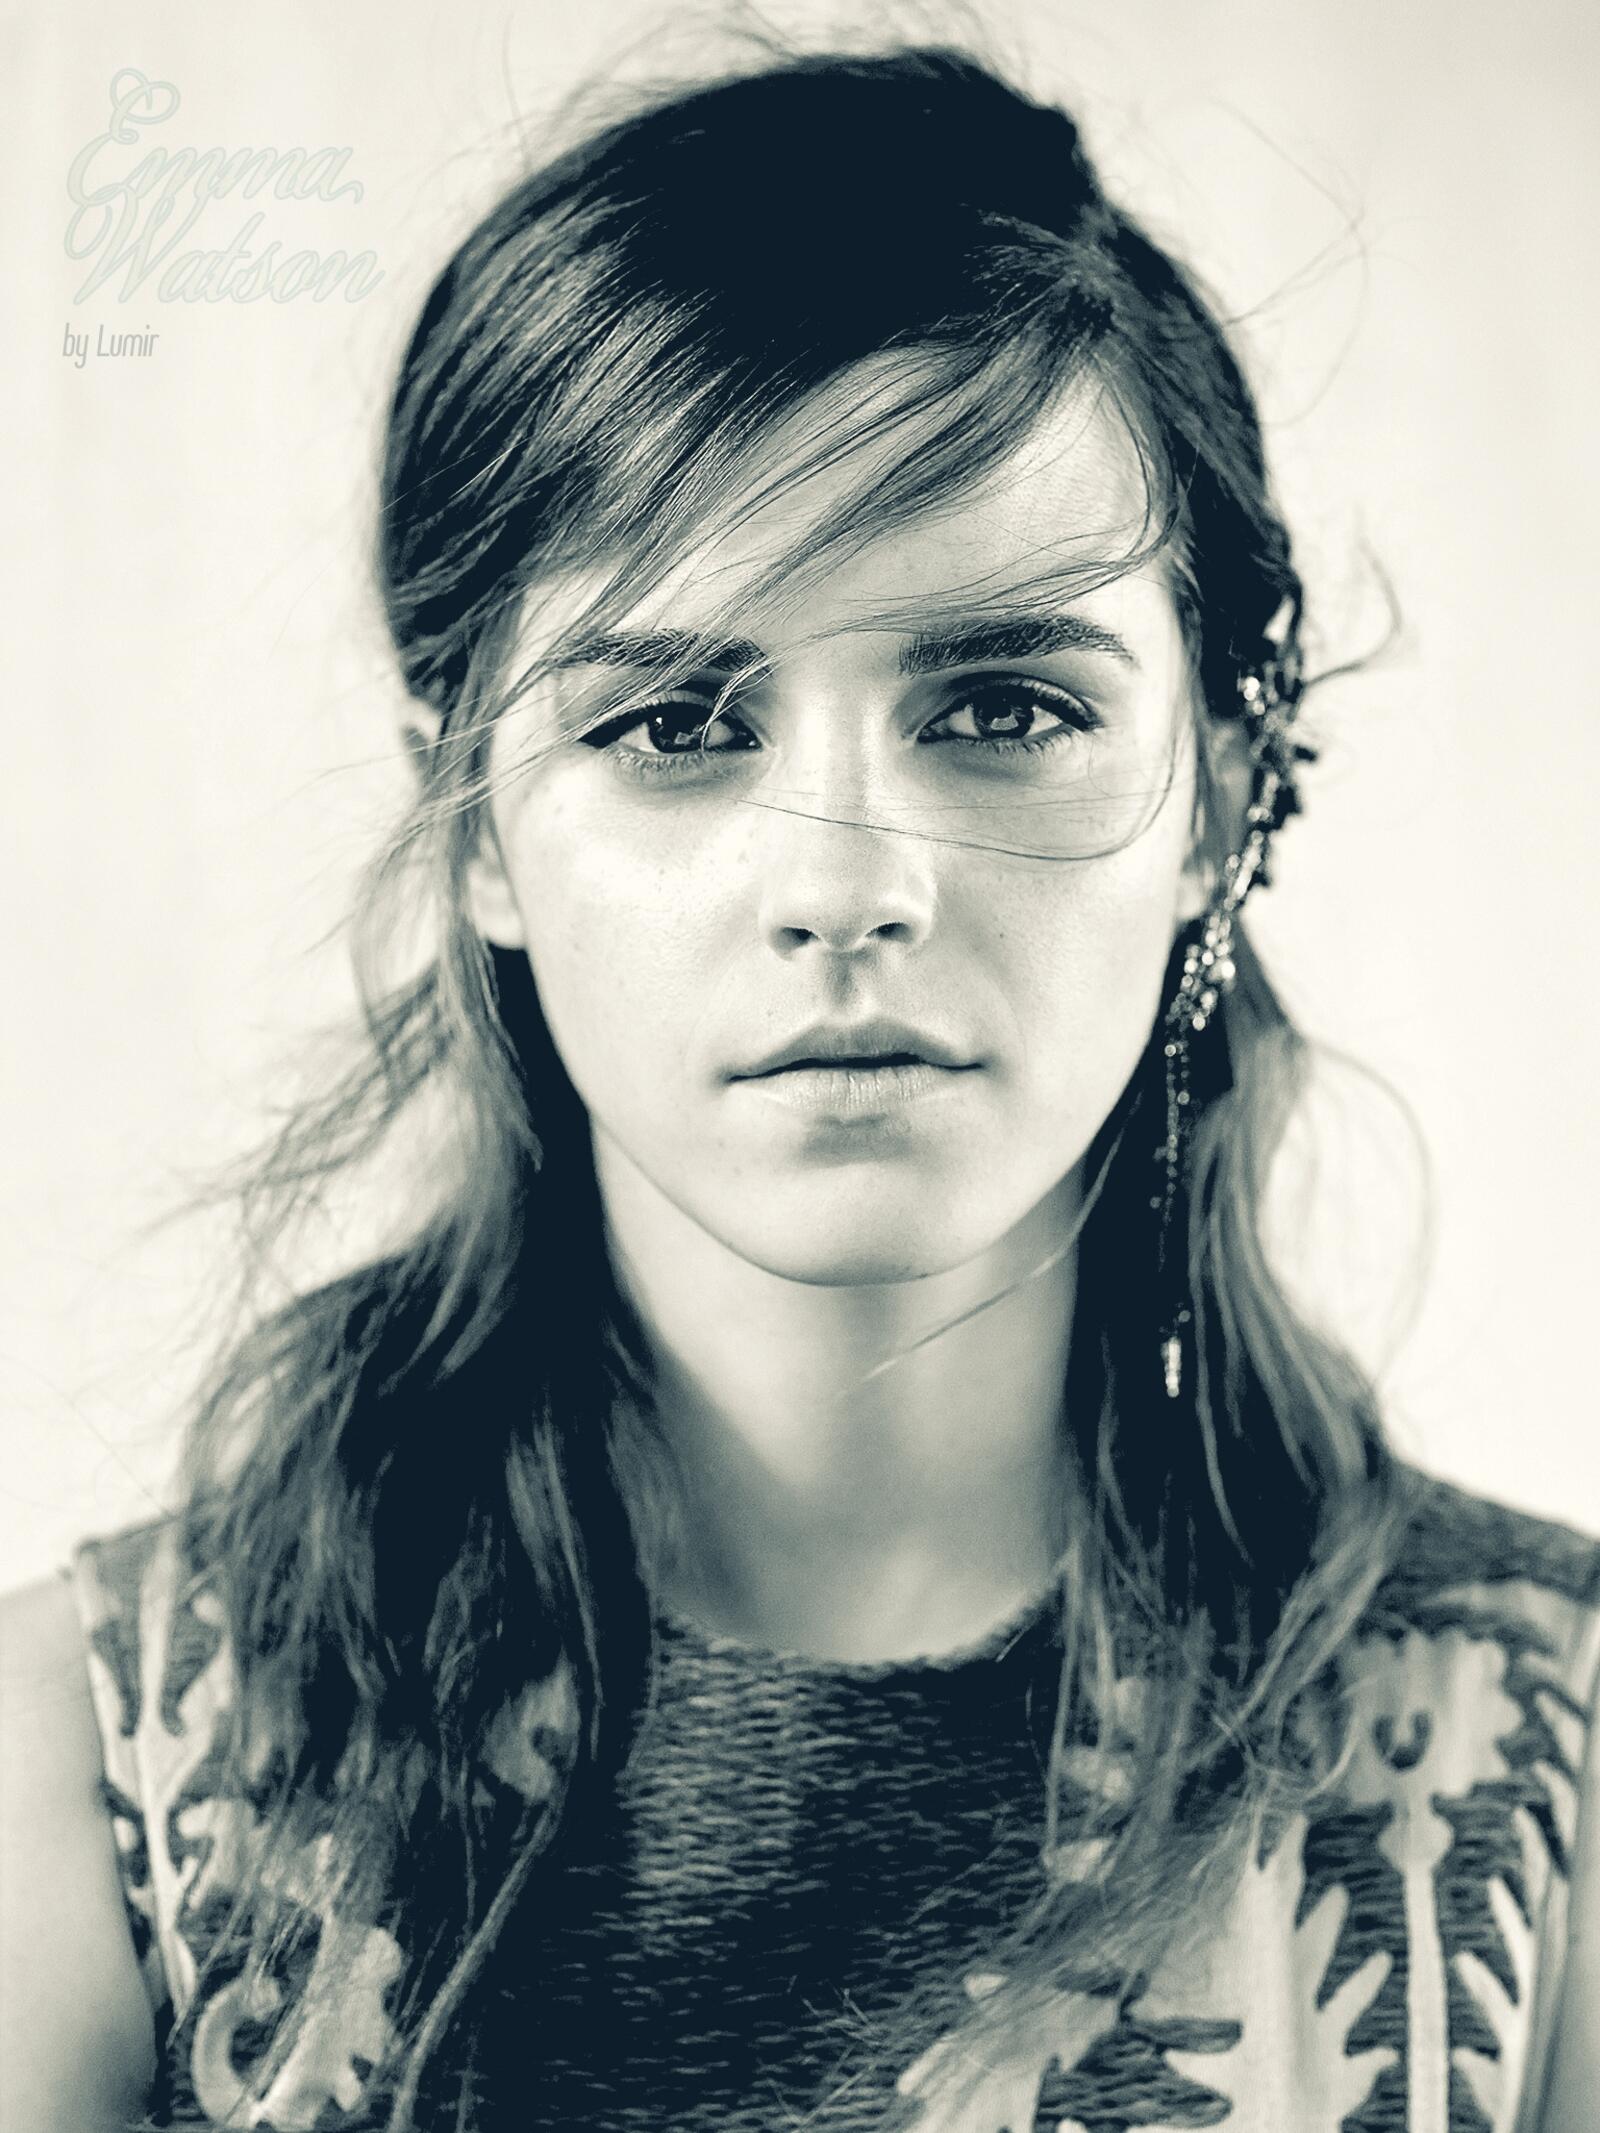 Wallpapers Emma Watson face portrait on the desktop